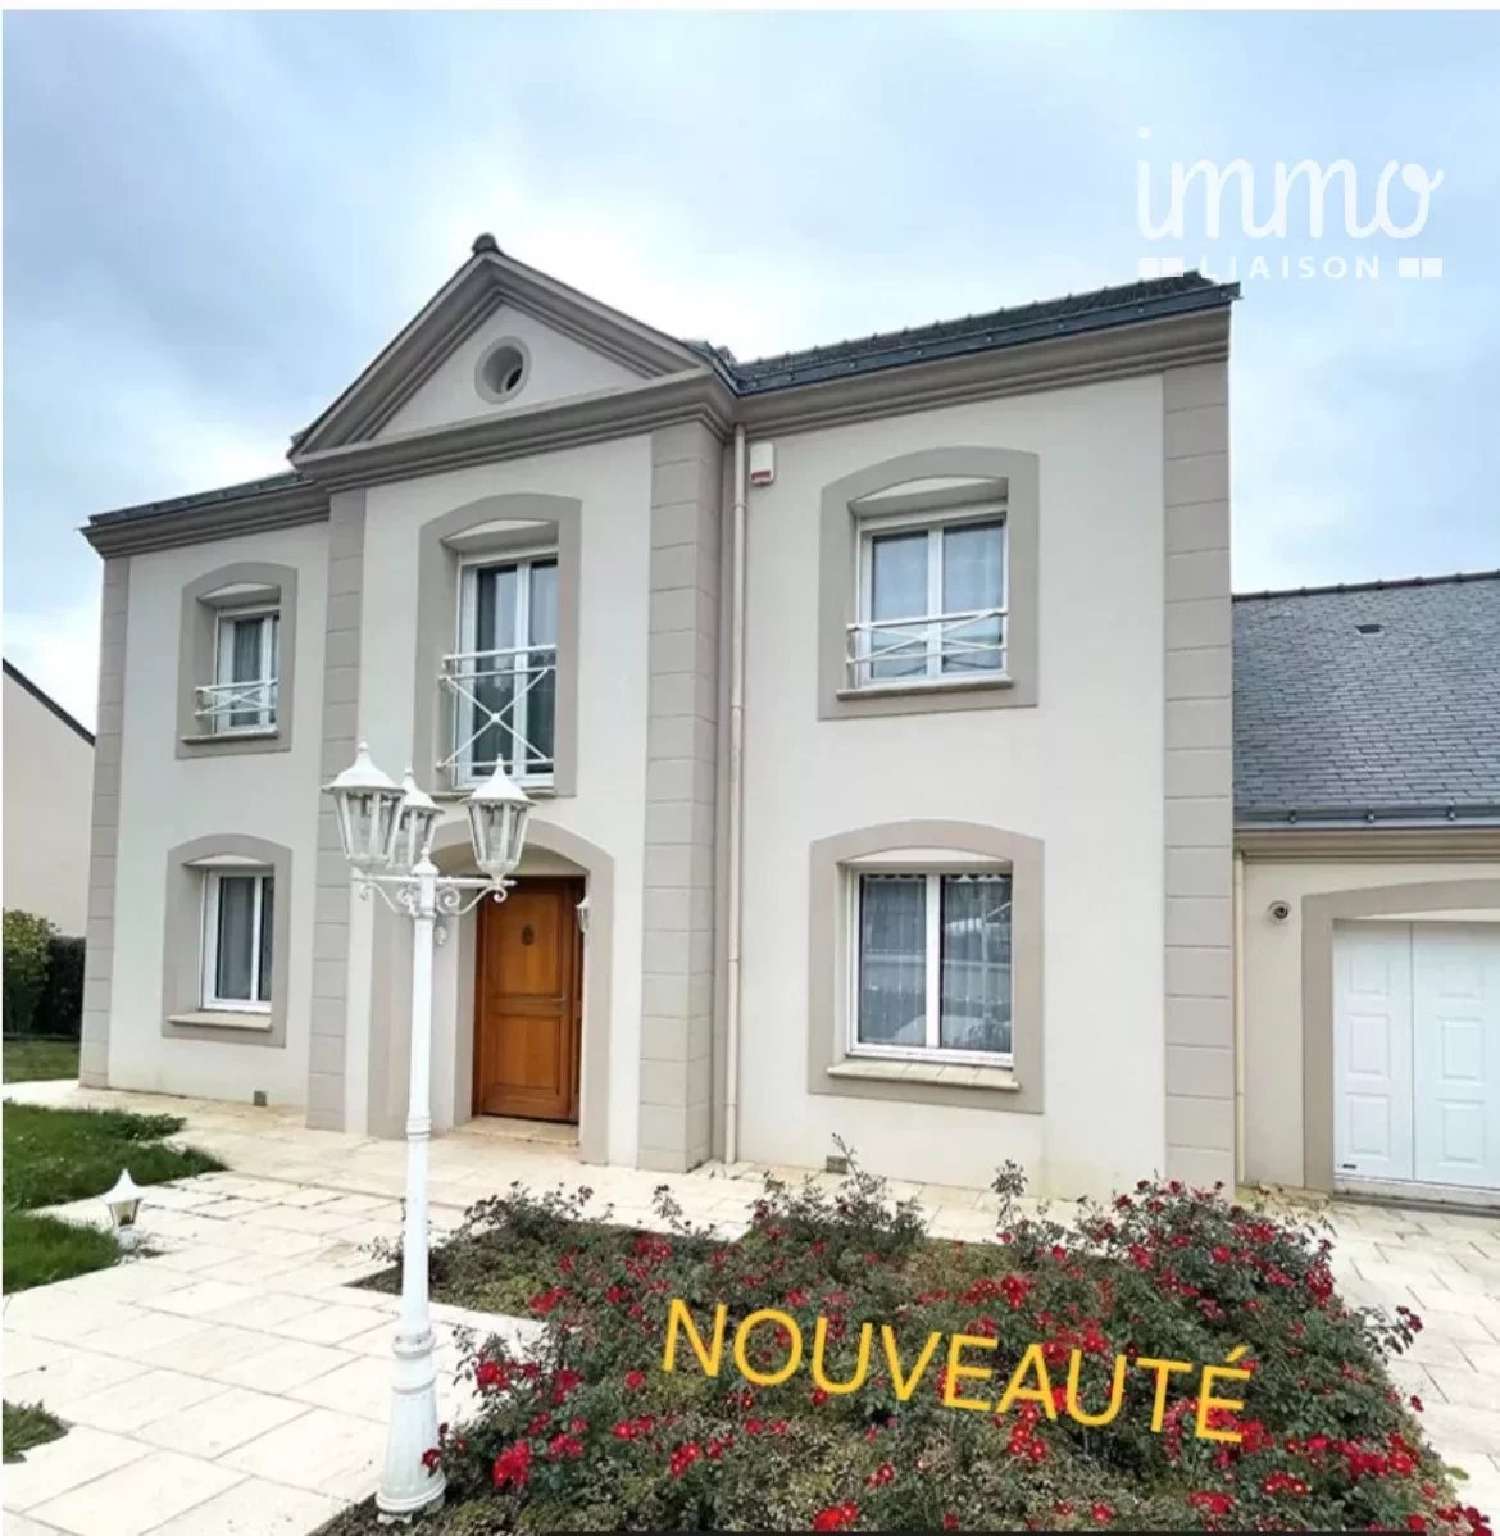  for sale house Carquefou Loire-Atlantique 1